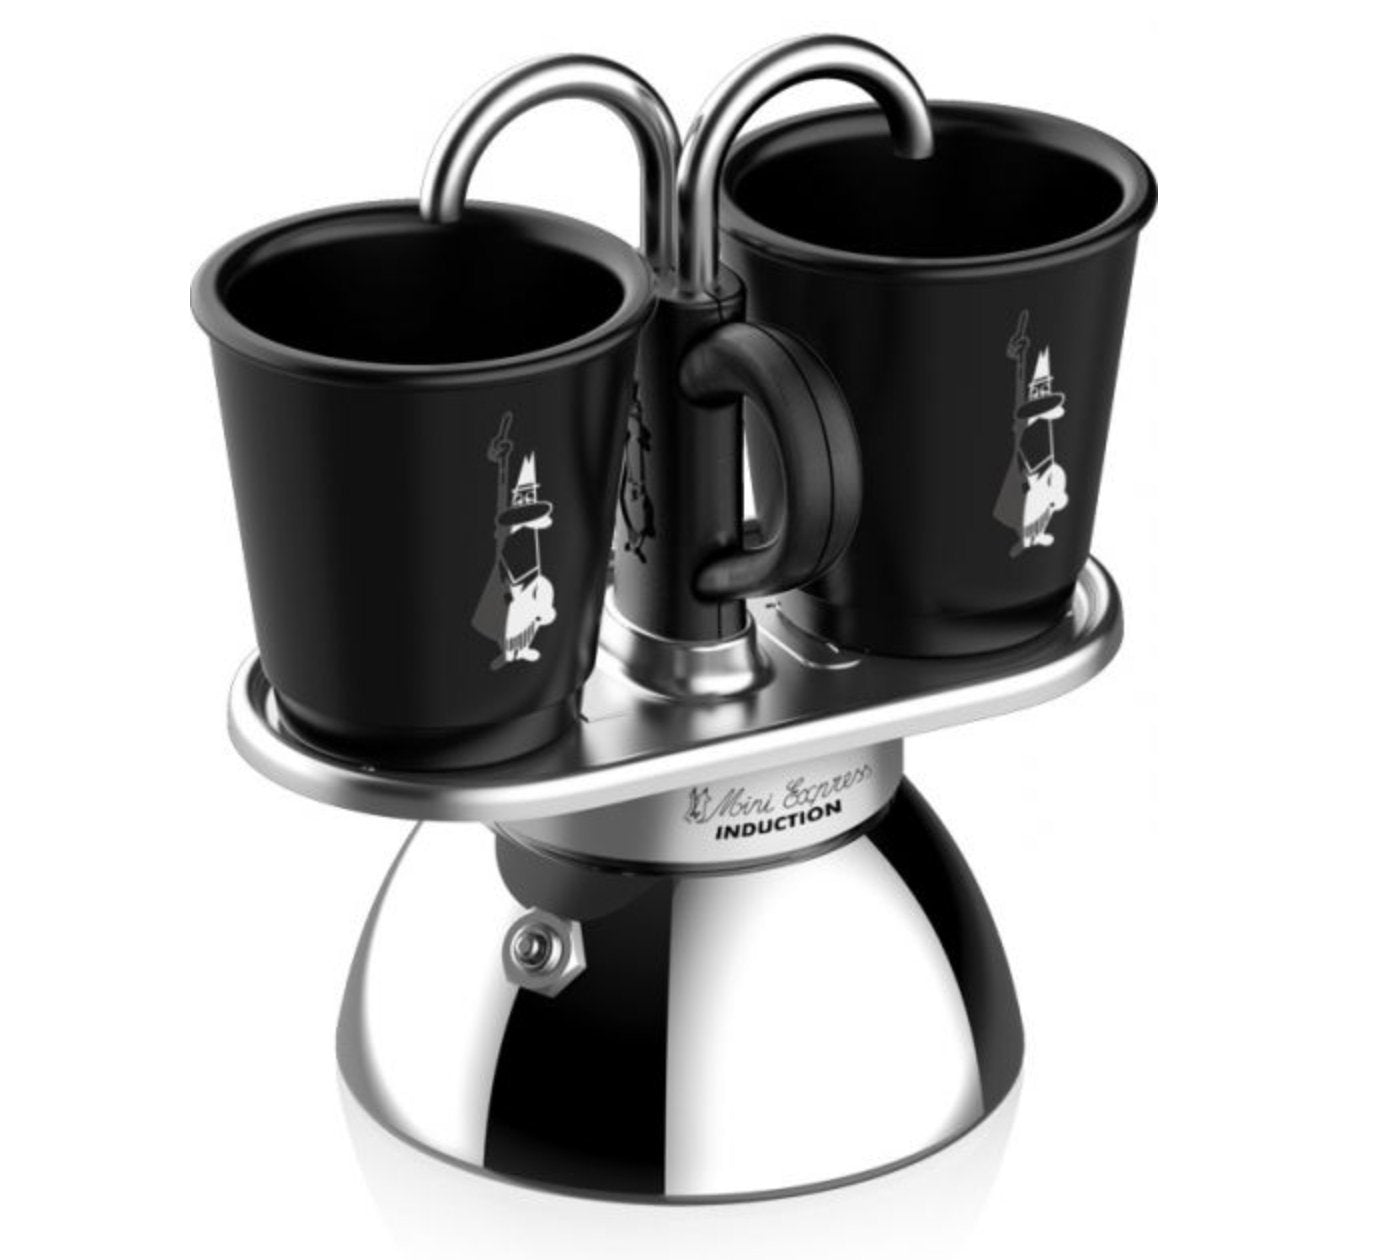 Bialetti Moka Pot 2 Cup - Mini Express Set